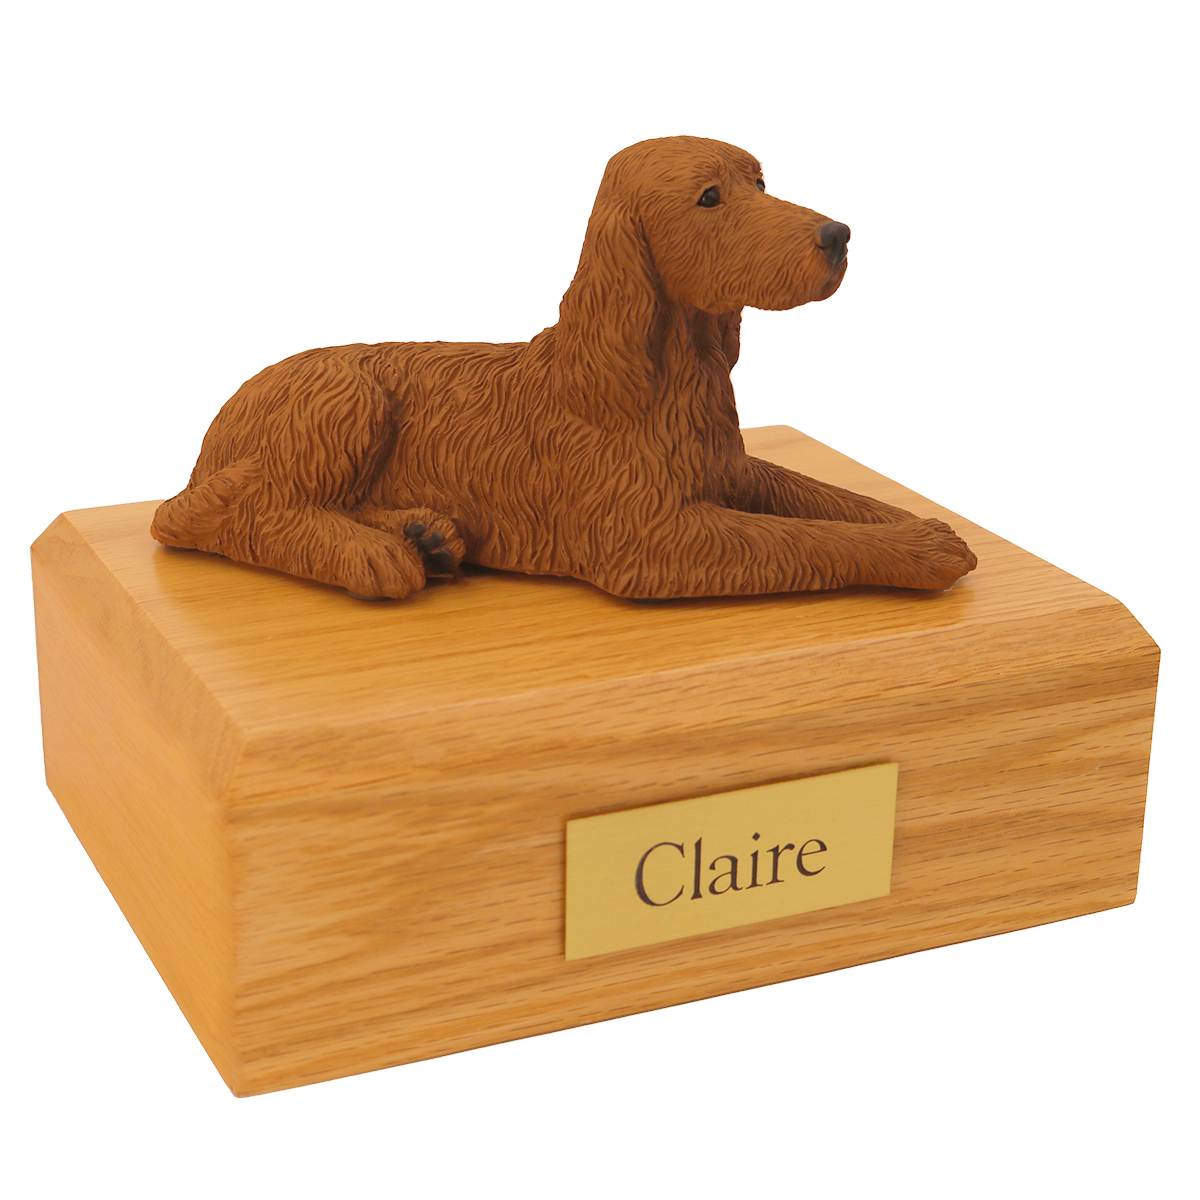 Dog, Irish Setter - Figurine Urn